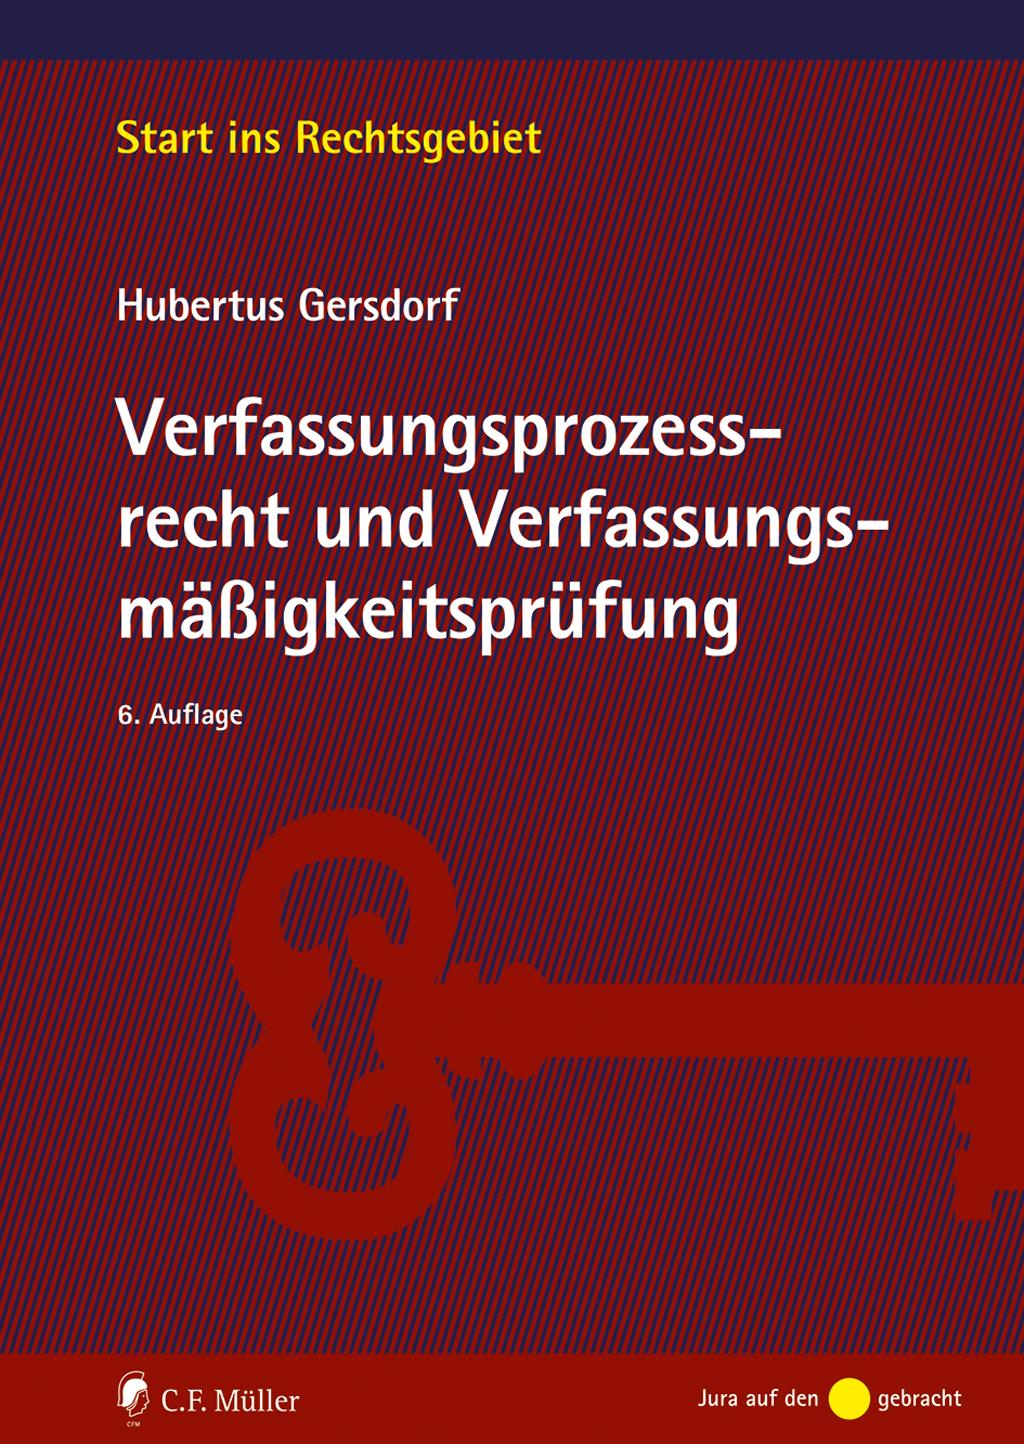 Carte Verfassungsprozessrecht und Verfassungsmäßigkeitsprüfung Hubertus Gersdorf